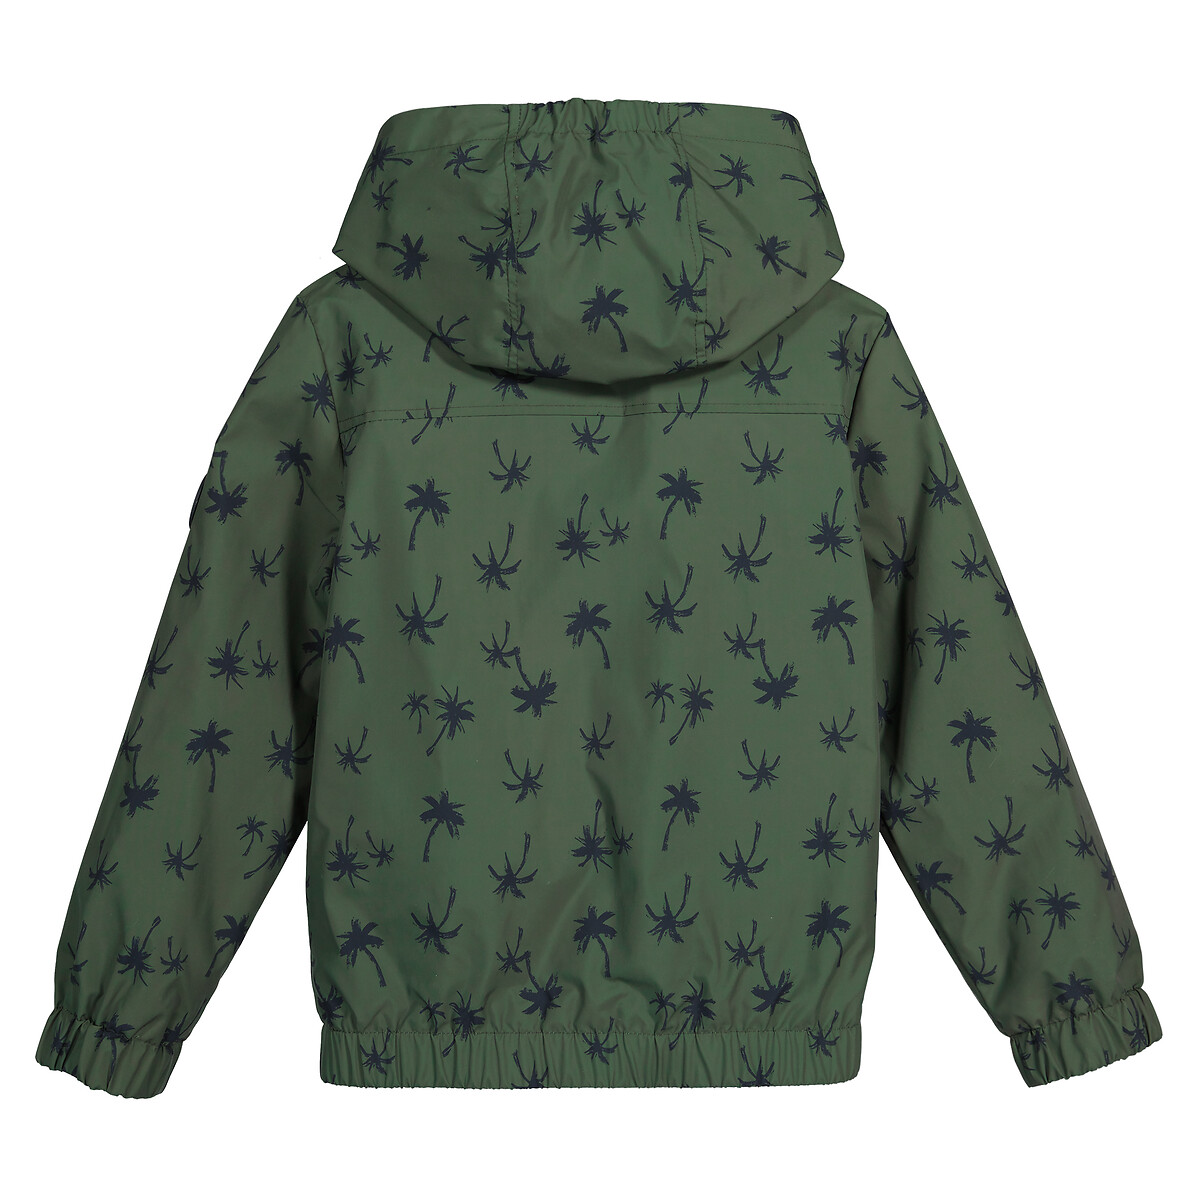 Куртка С капюшоном с принтом пальмы 3 года - 94 см зеленый LaRedoute, размер 3 года - 94 см - фото 4